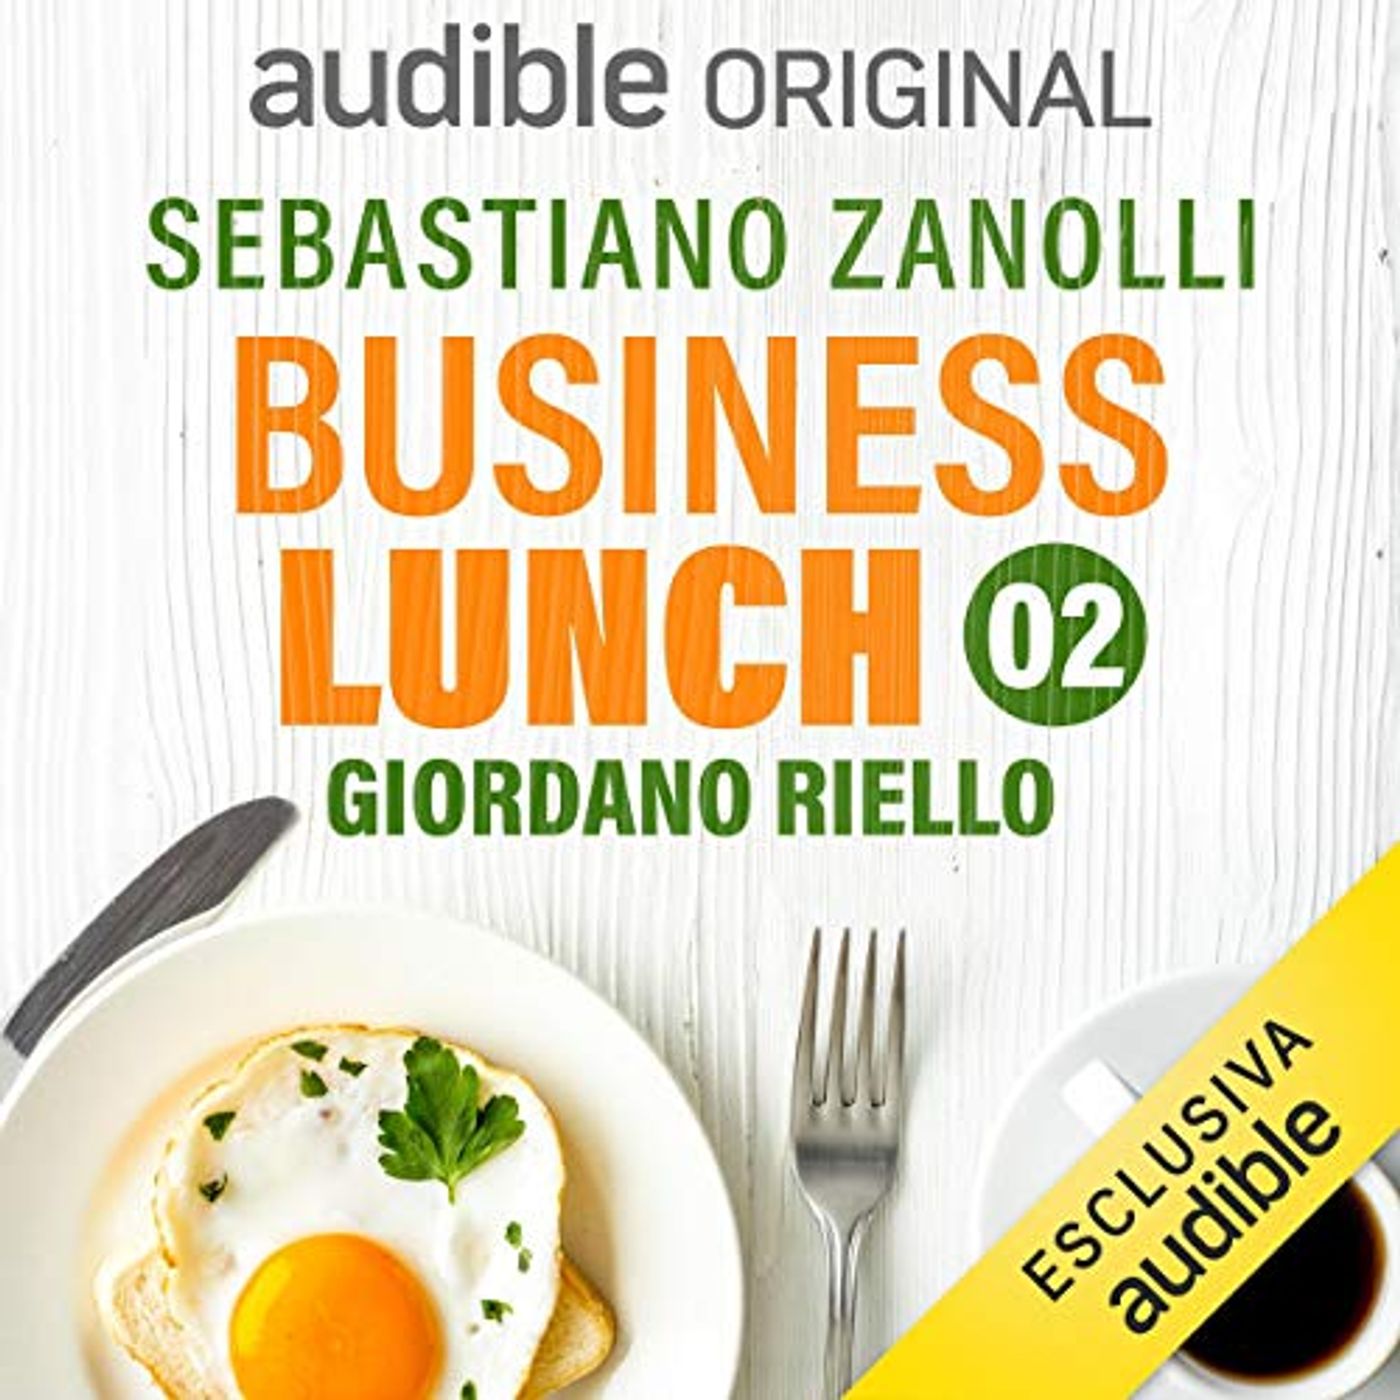 Business Lunch. Giordano Riello. Come si fa innovazione - Sebastiano Zanolli